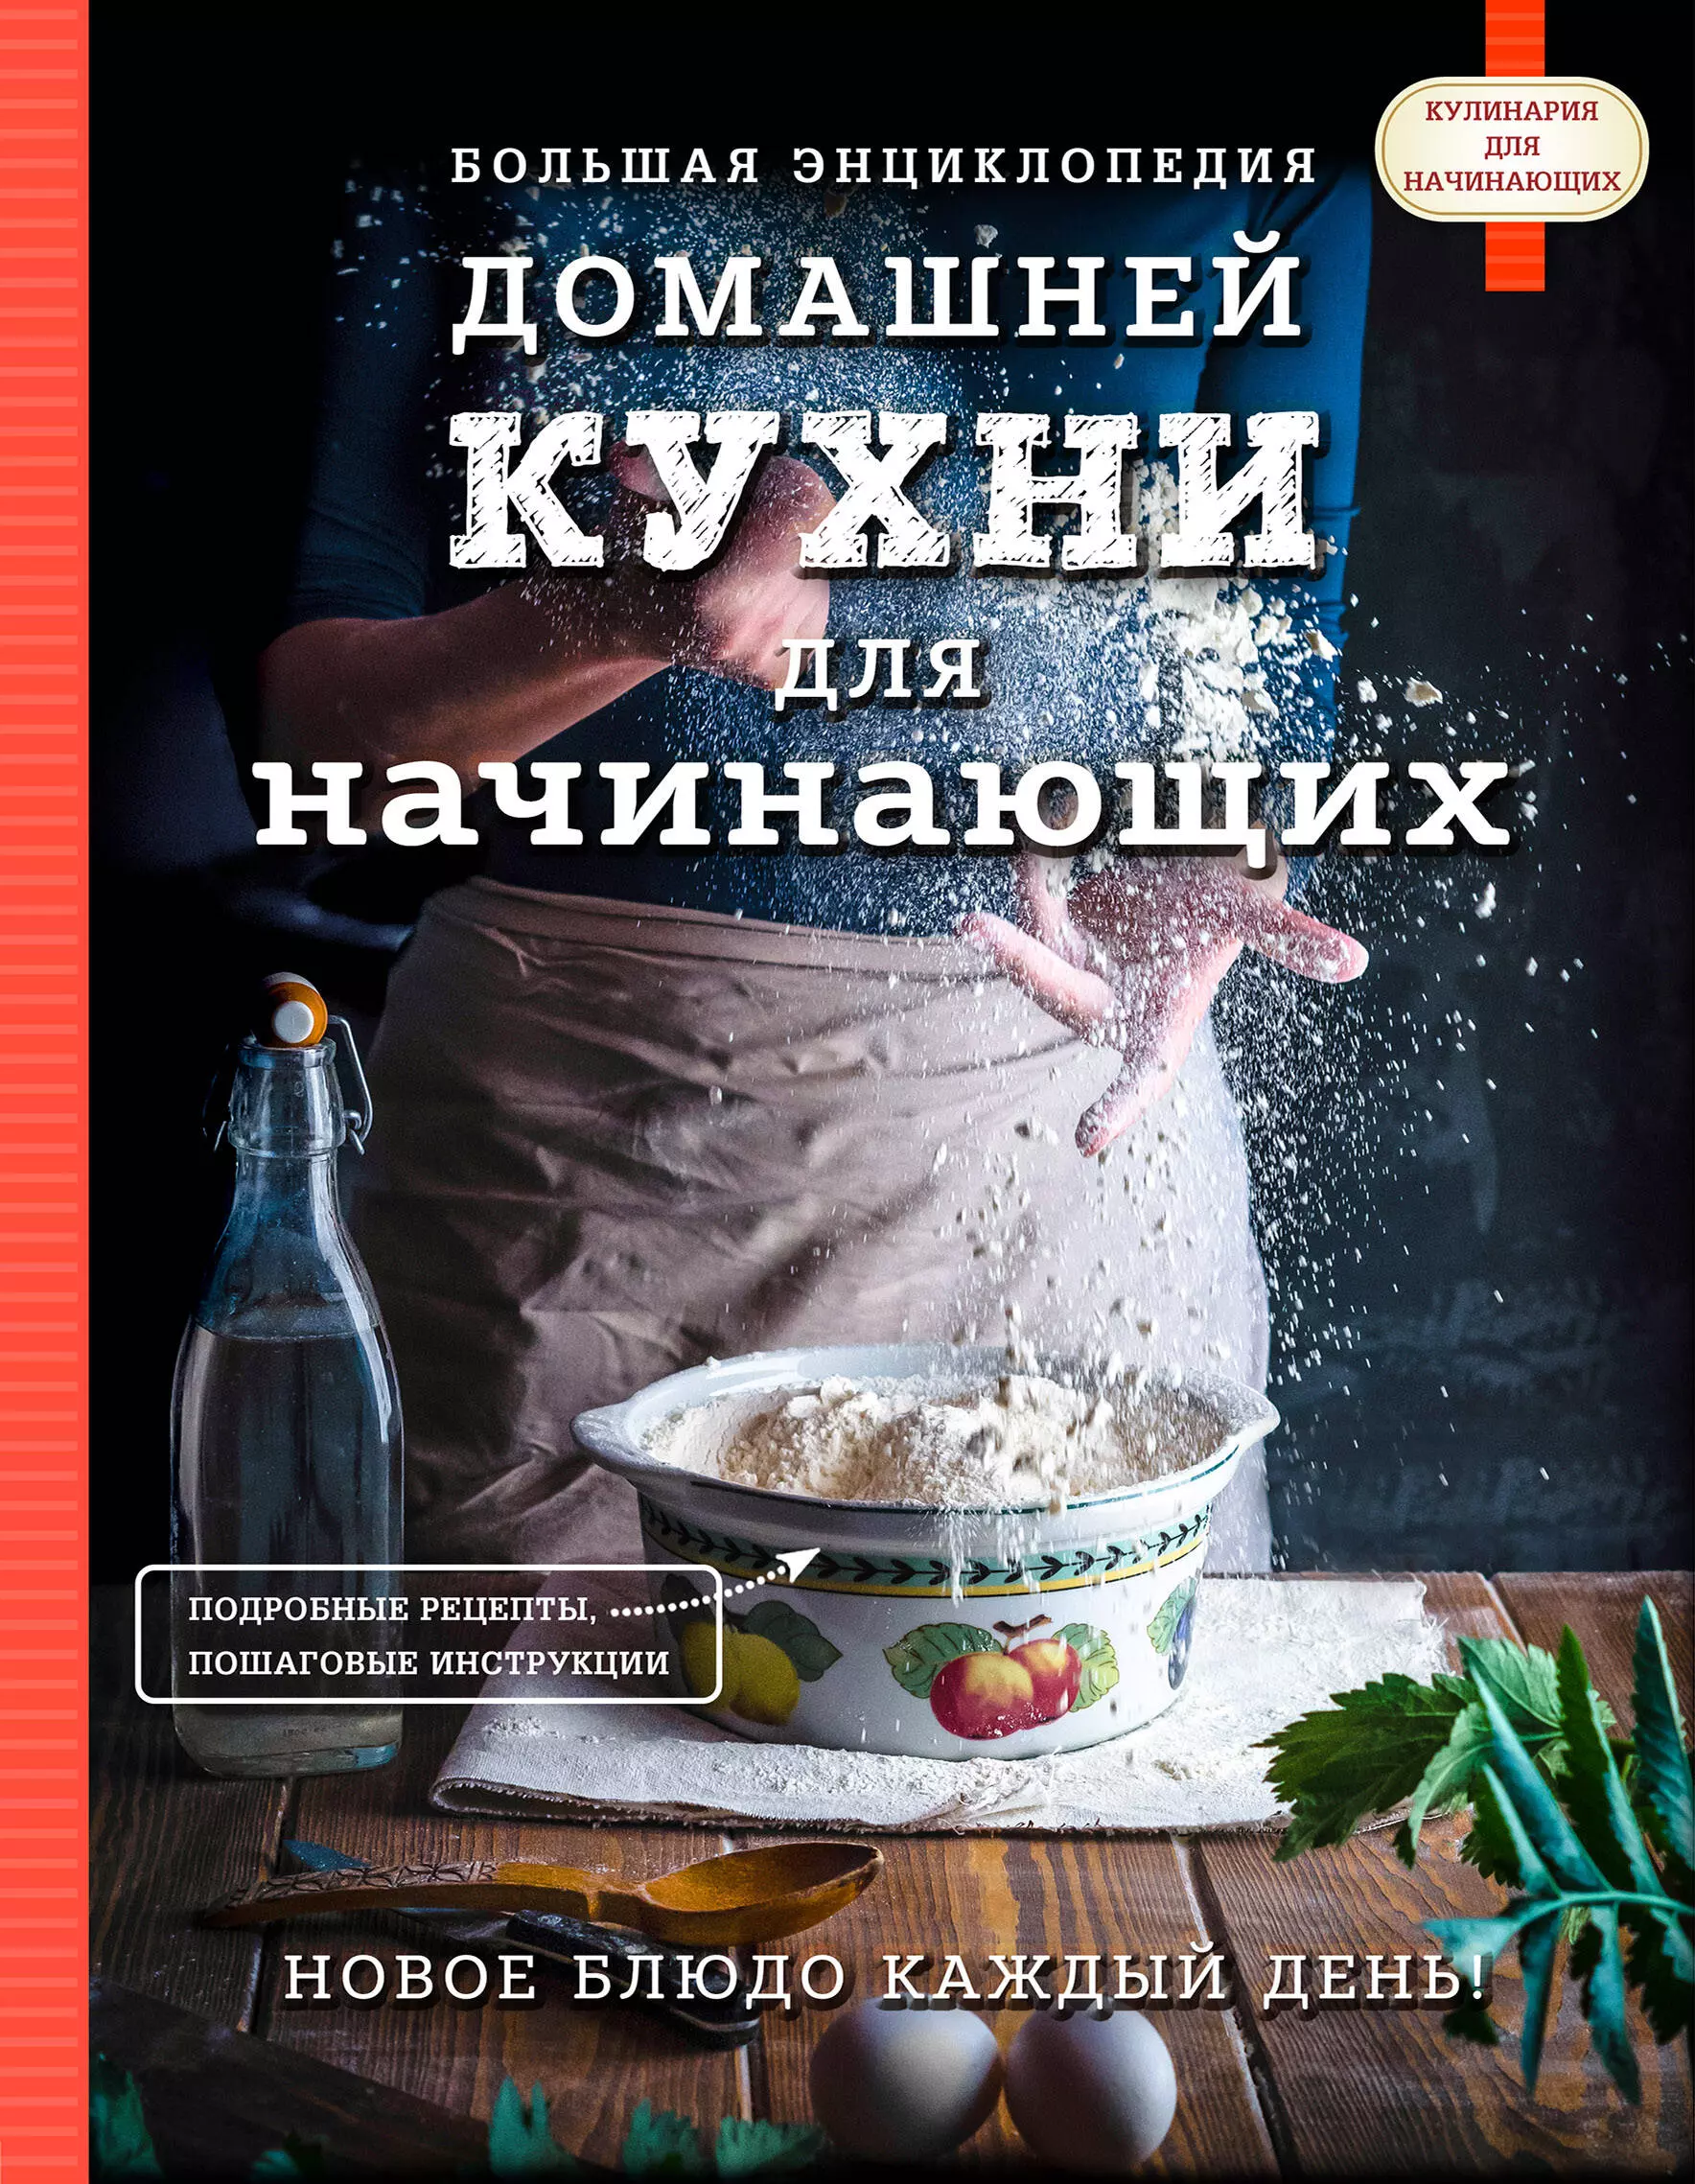 аношин анатолий васильевич большая книга домашней кухни Большая энциклопедия домашней кухни для начинающих